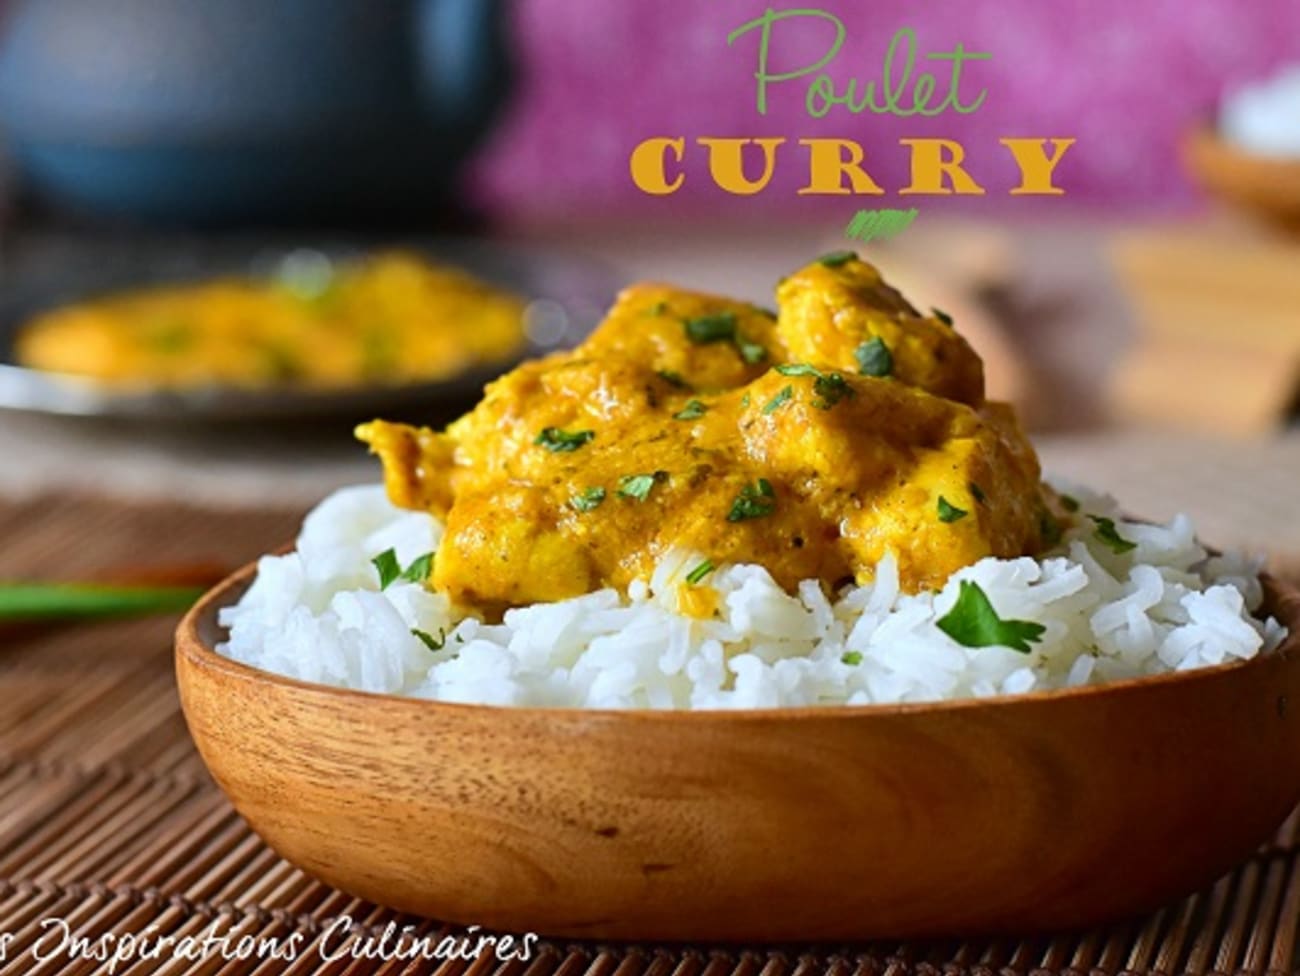 Nouilles de riz au poulet sauce curry facile : découvrez les